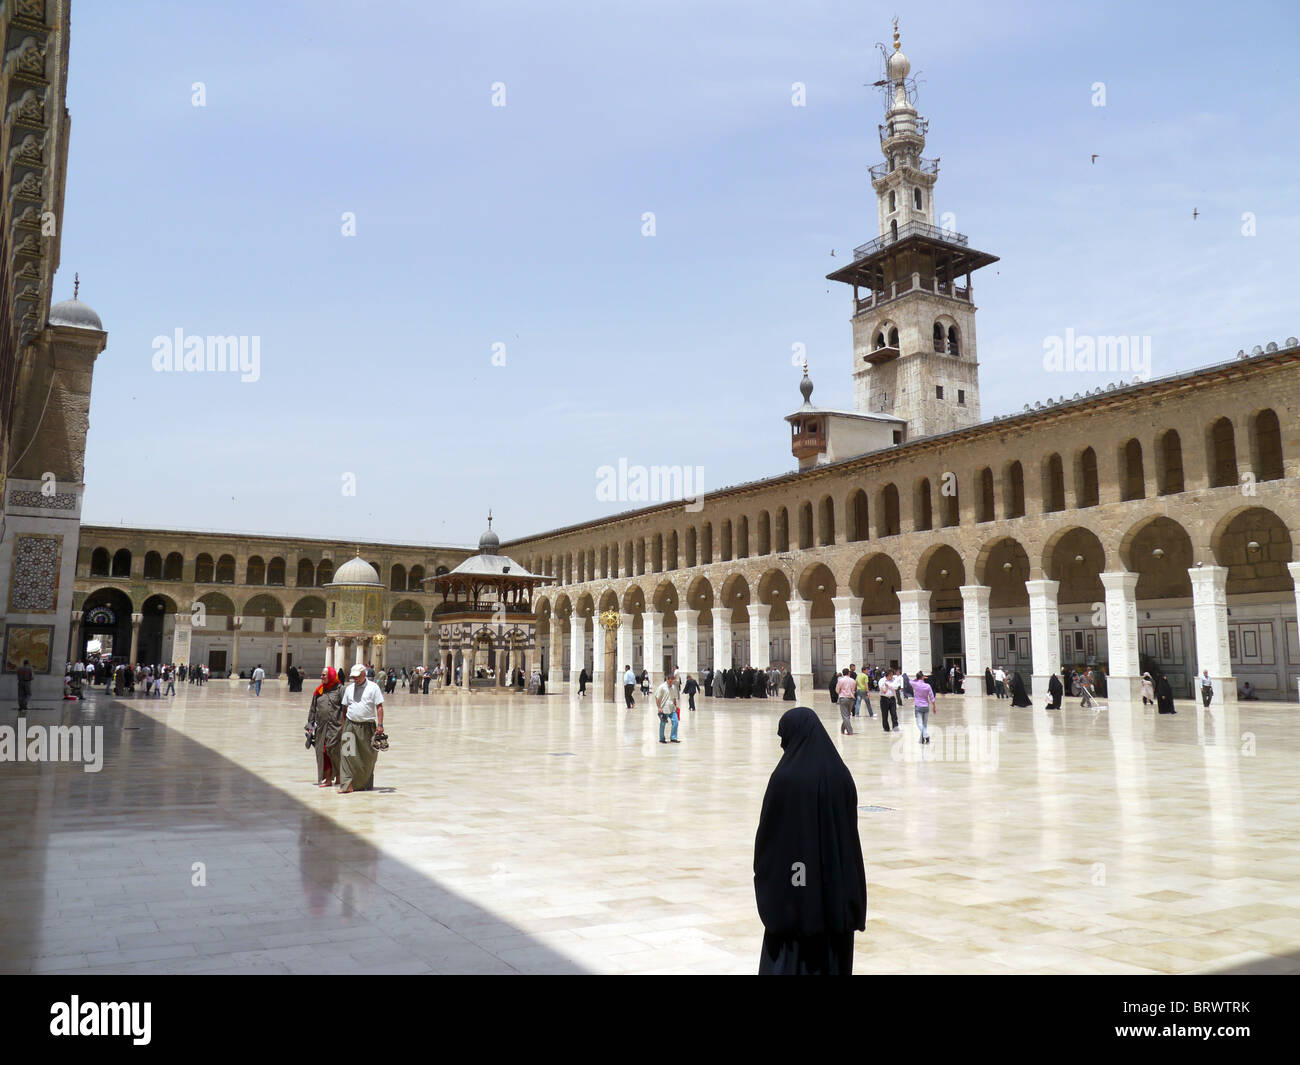 La Siria all'interno della moschea Ummayad, Damasco. Fotografia di Sean Sprague Foto Stock